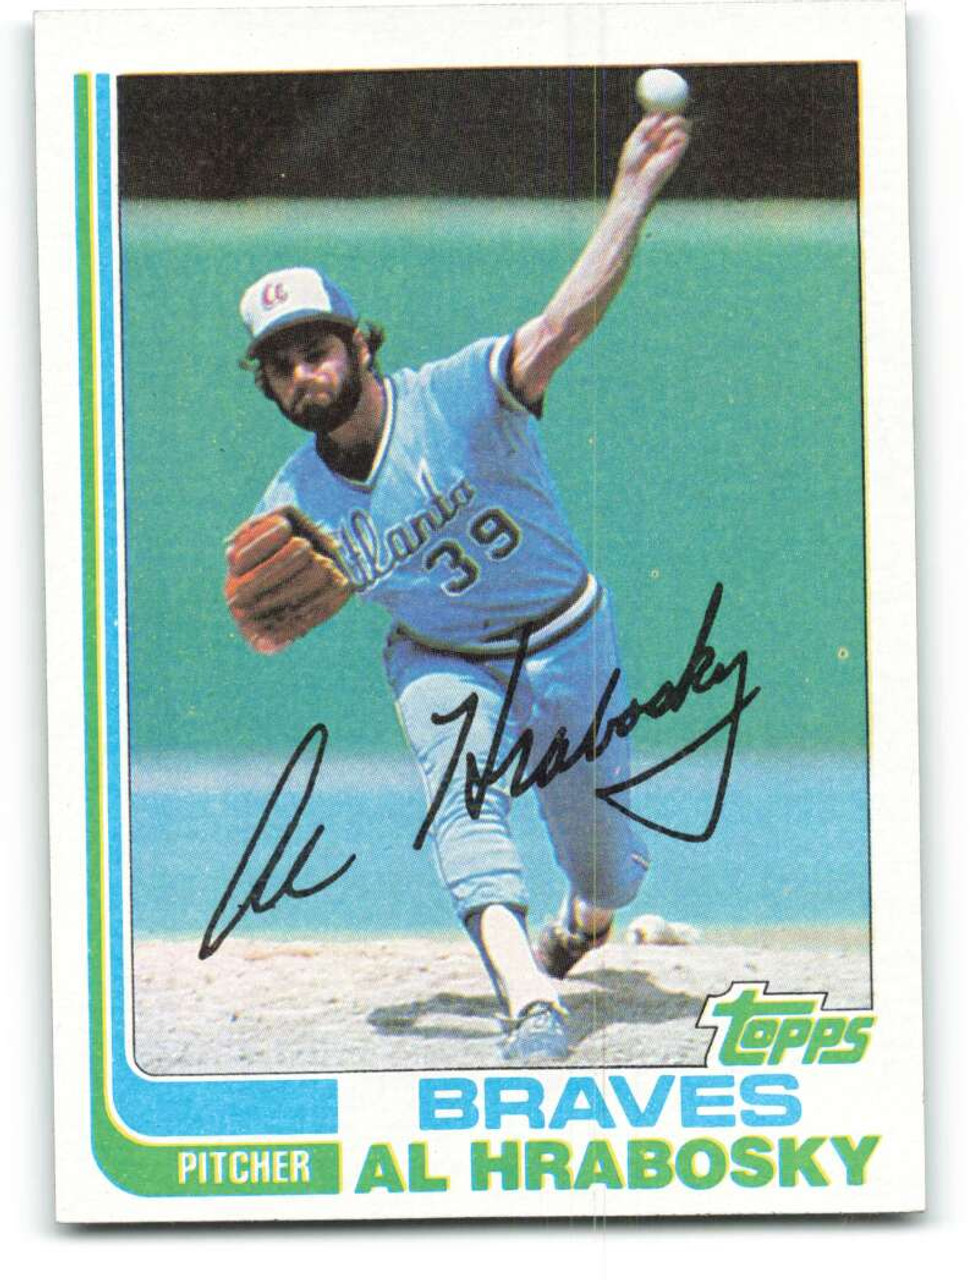 1981 Topps Al Hrabosky  Baseball cards, Braves, Vintage baseball